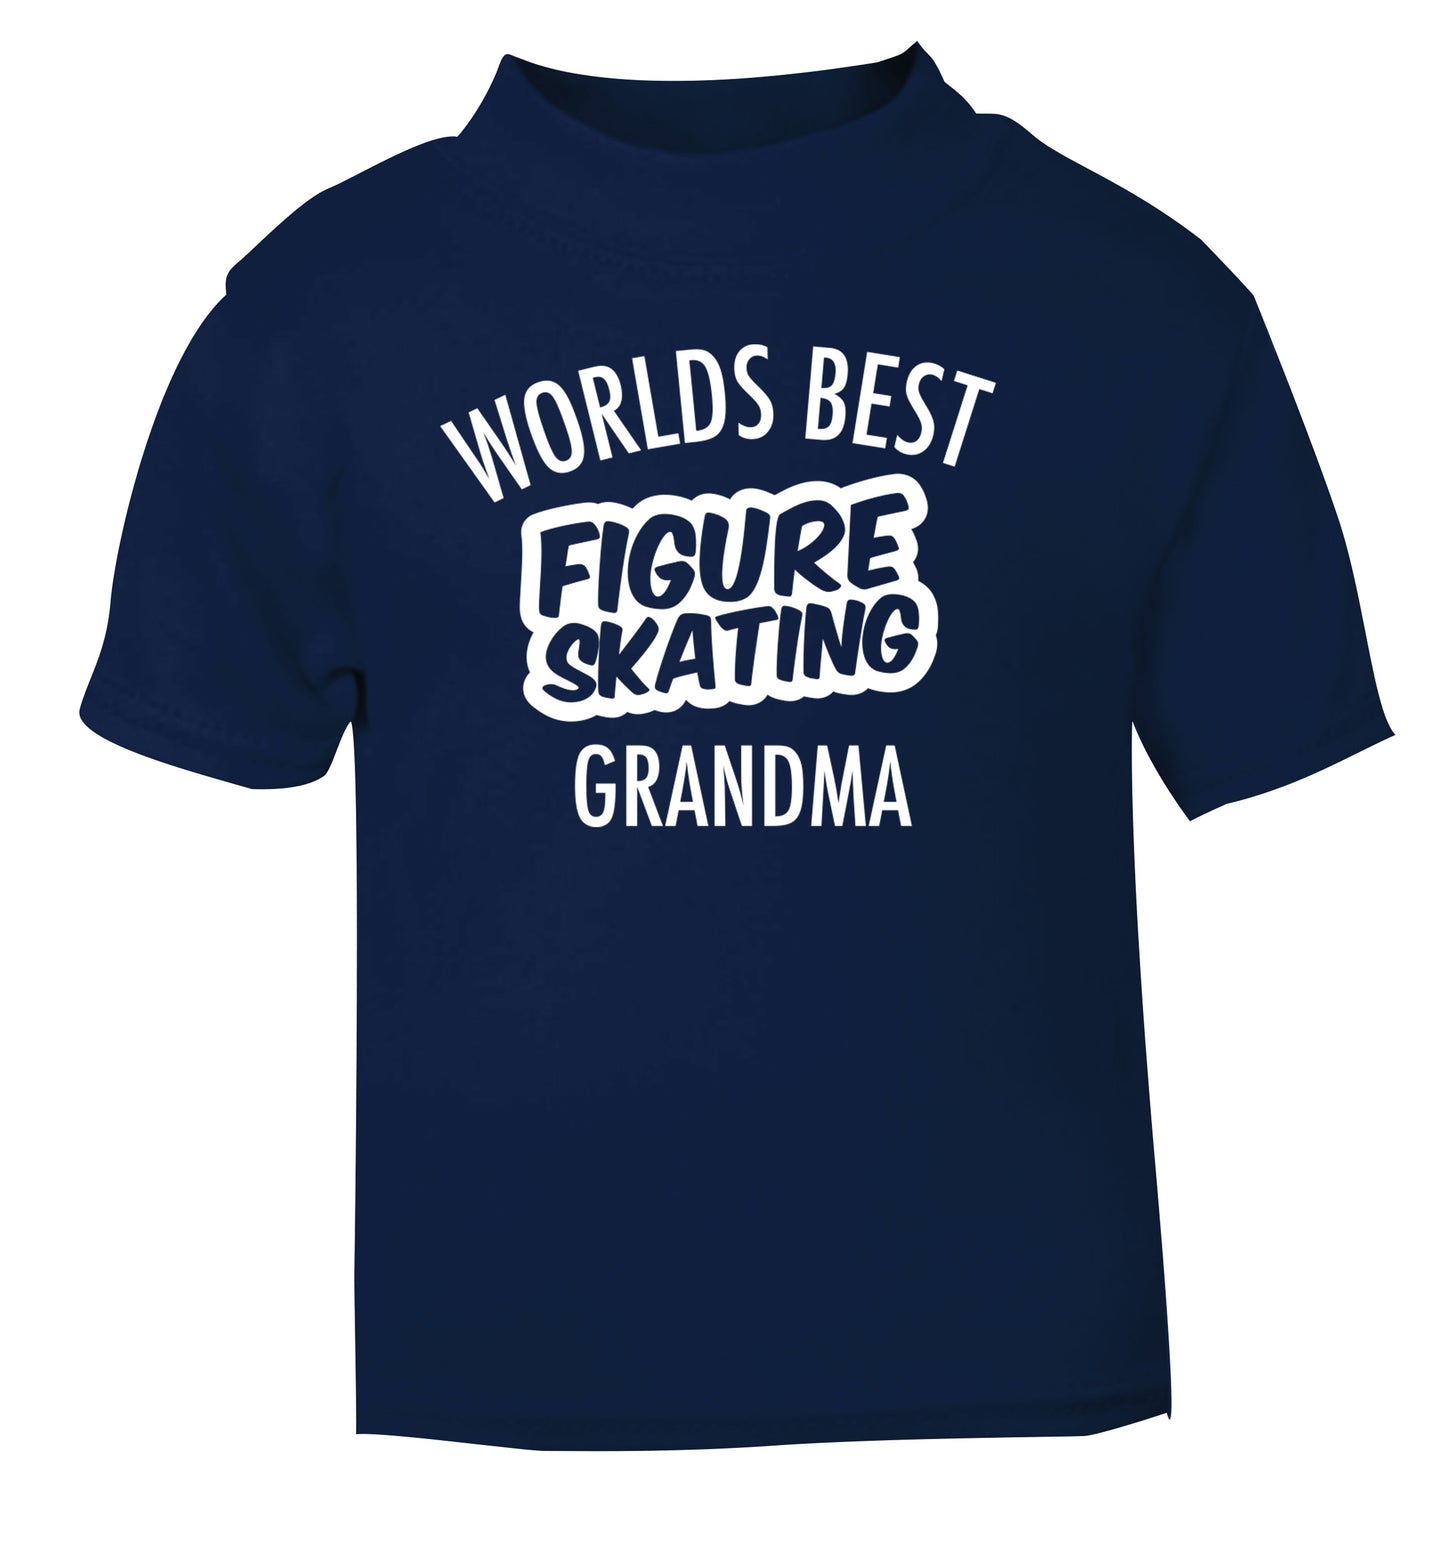 Worlds best figure skating grandma navy Baby Toddler Tshirt 2 Years